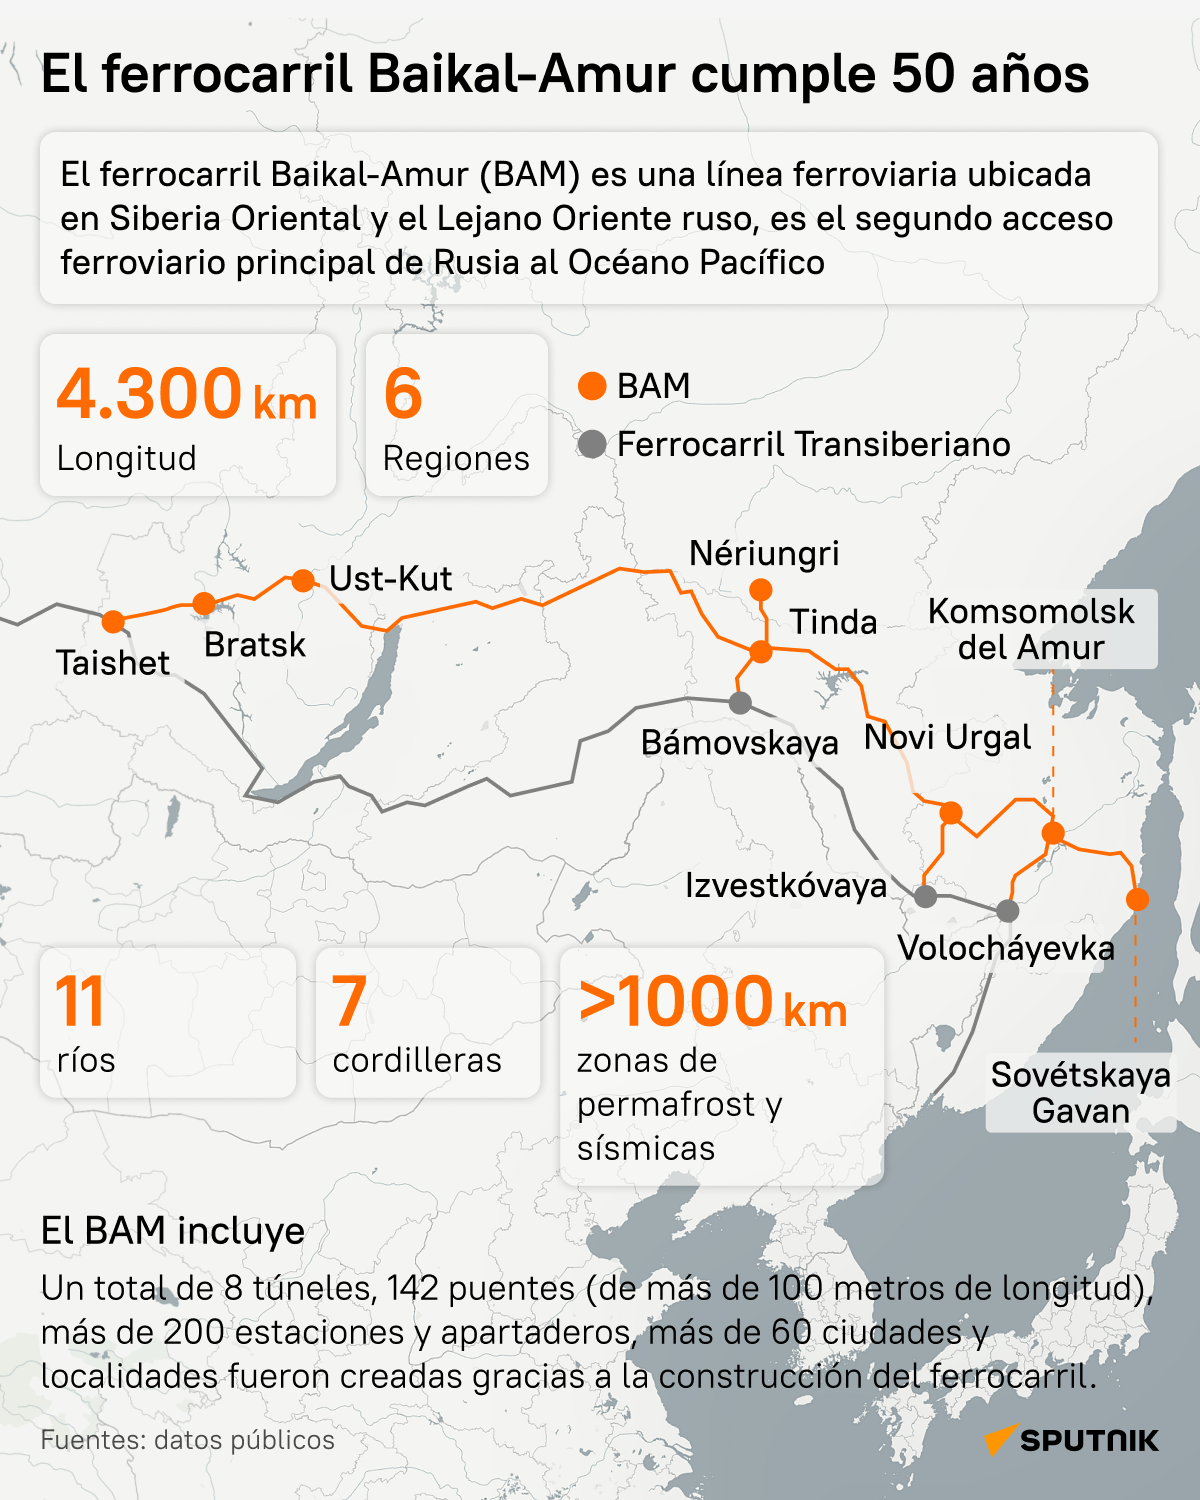 El ferrocarril Baikal-Amur cumple 50 años - Sputnik Mundo